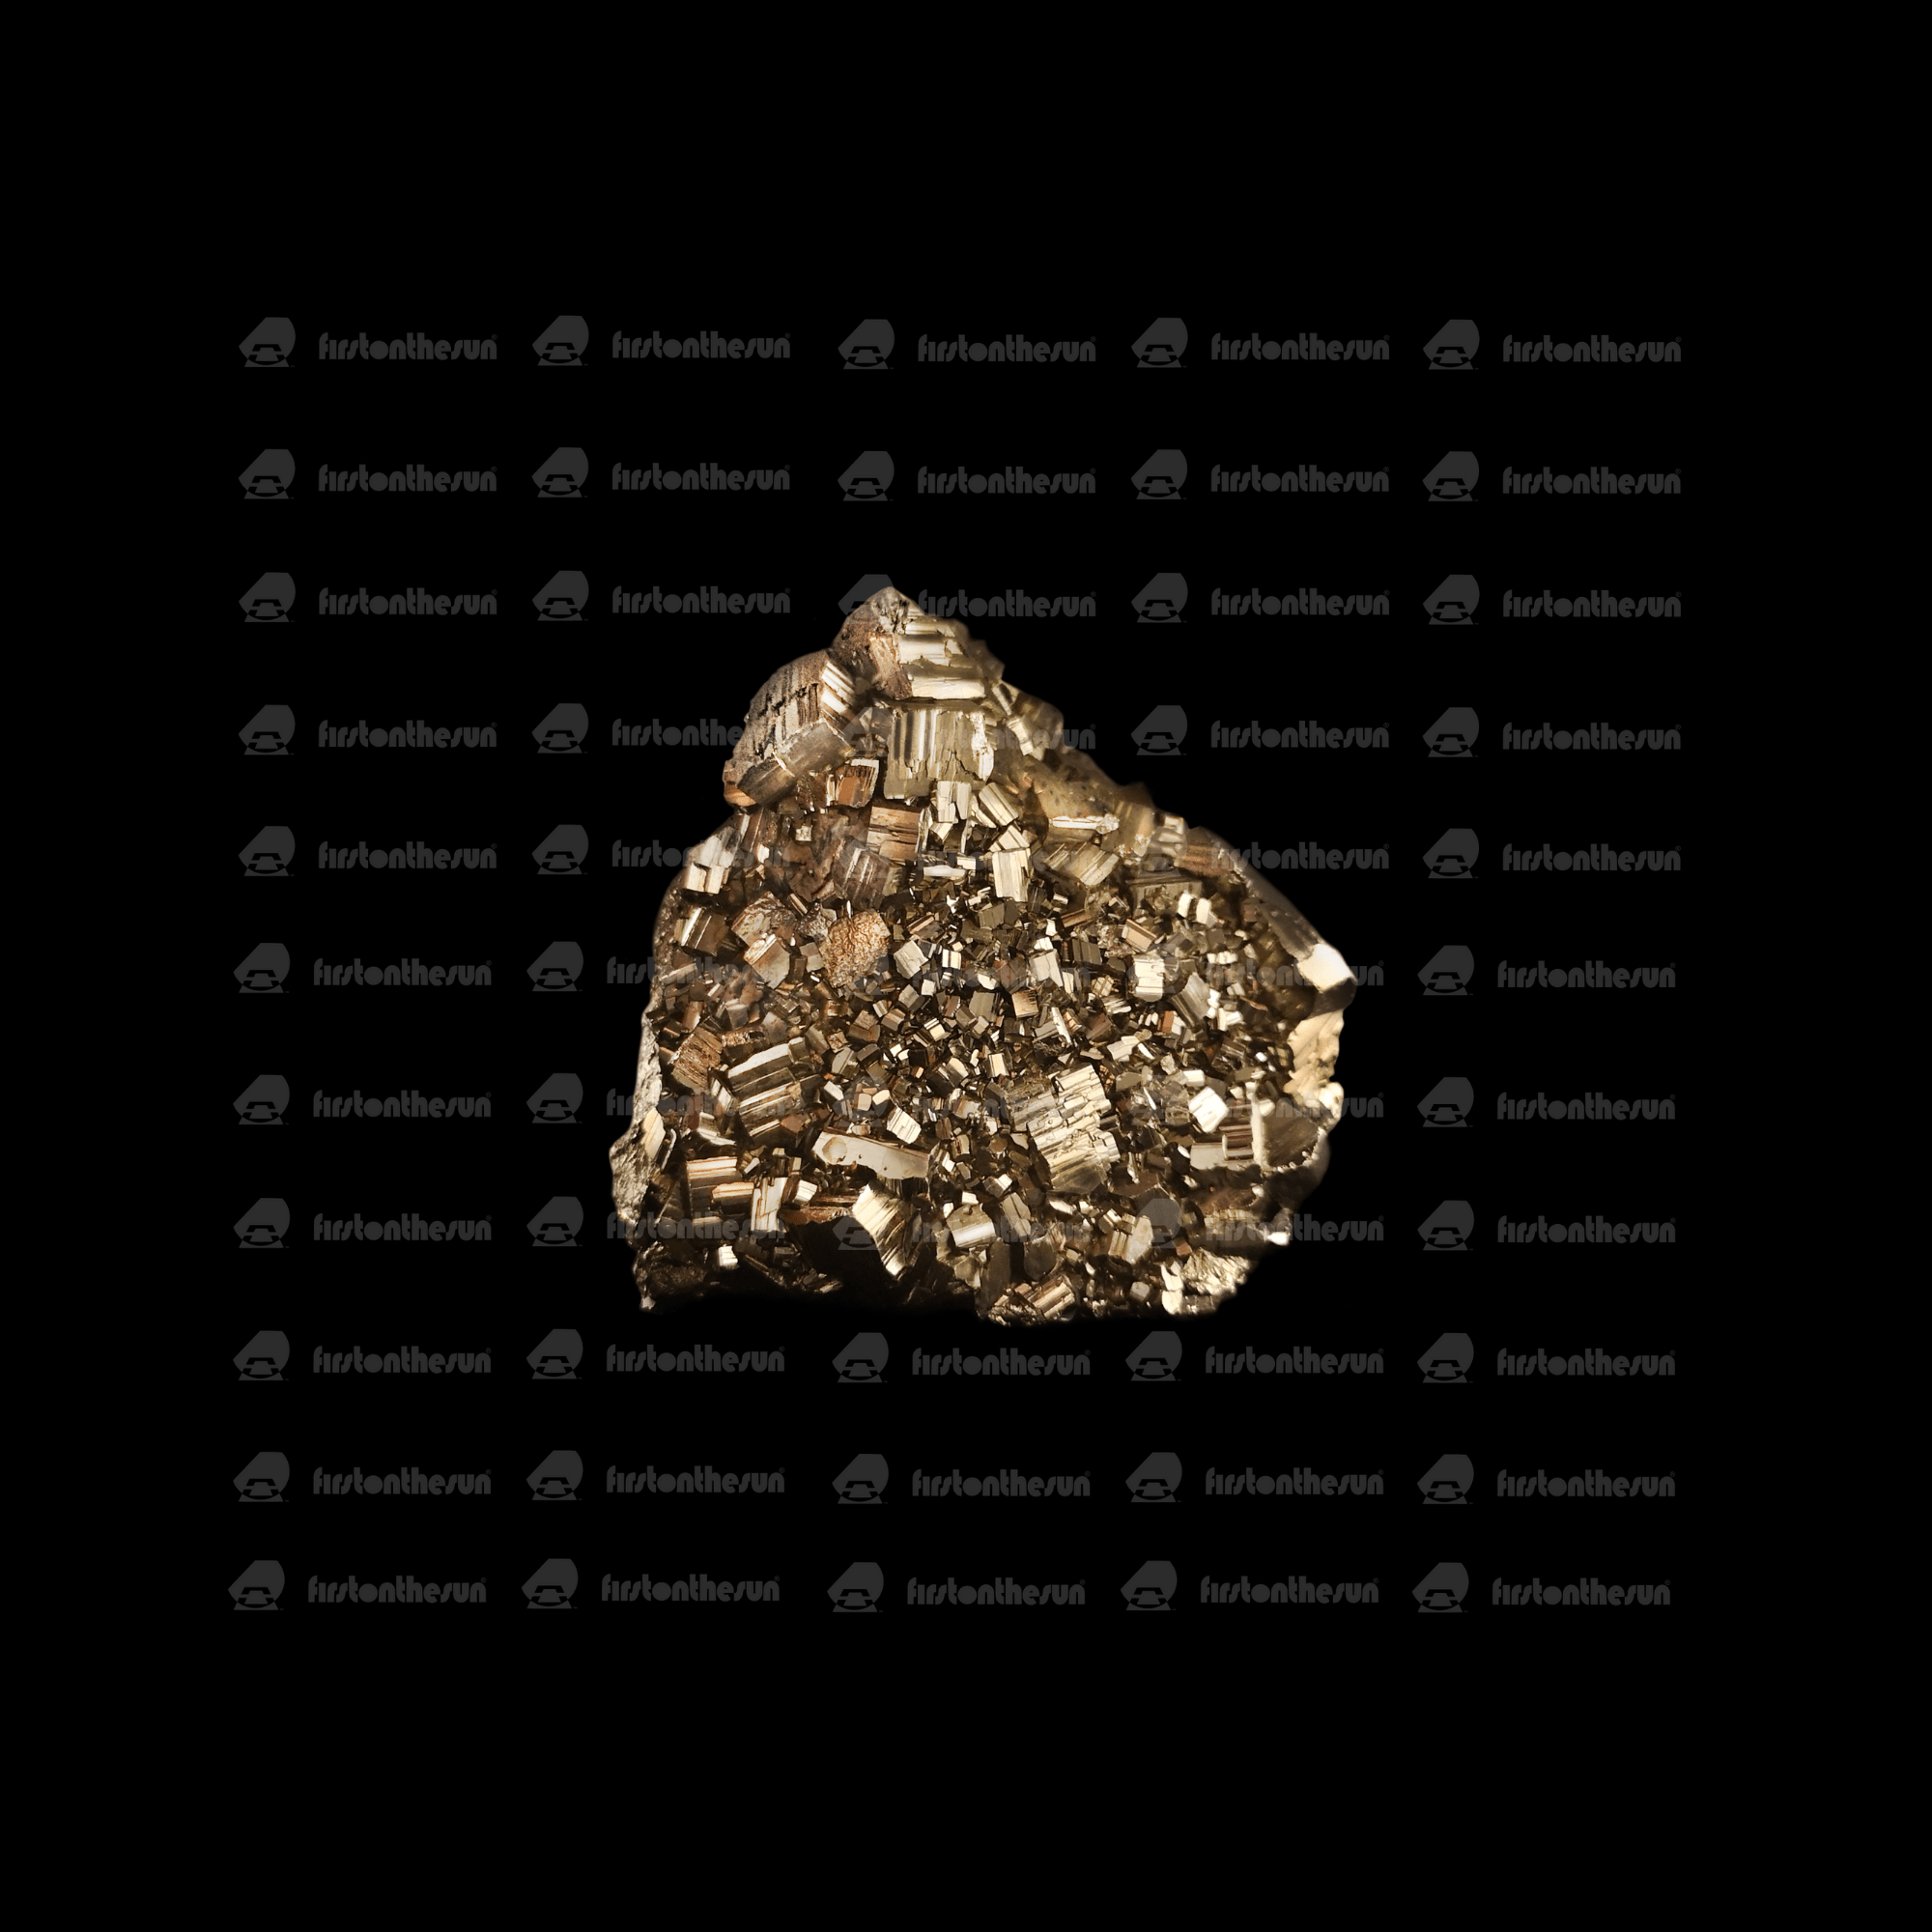 Stockfoto eines Pyrit Edelsteins. Die metallisch anmutenden Kristalle sind klar zu erkennen. Diese hochauflösende Fotografie des Minerals ist mit einem Wasserzeichen geschützt.